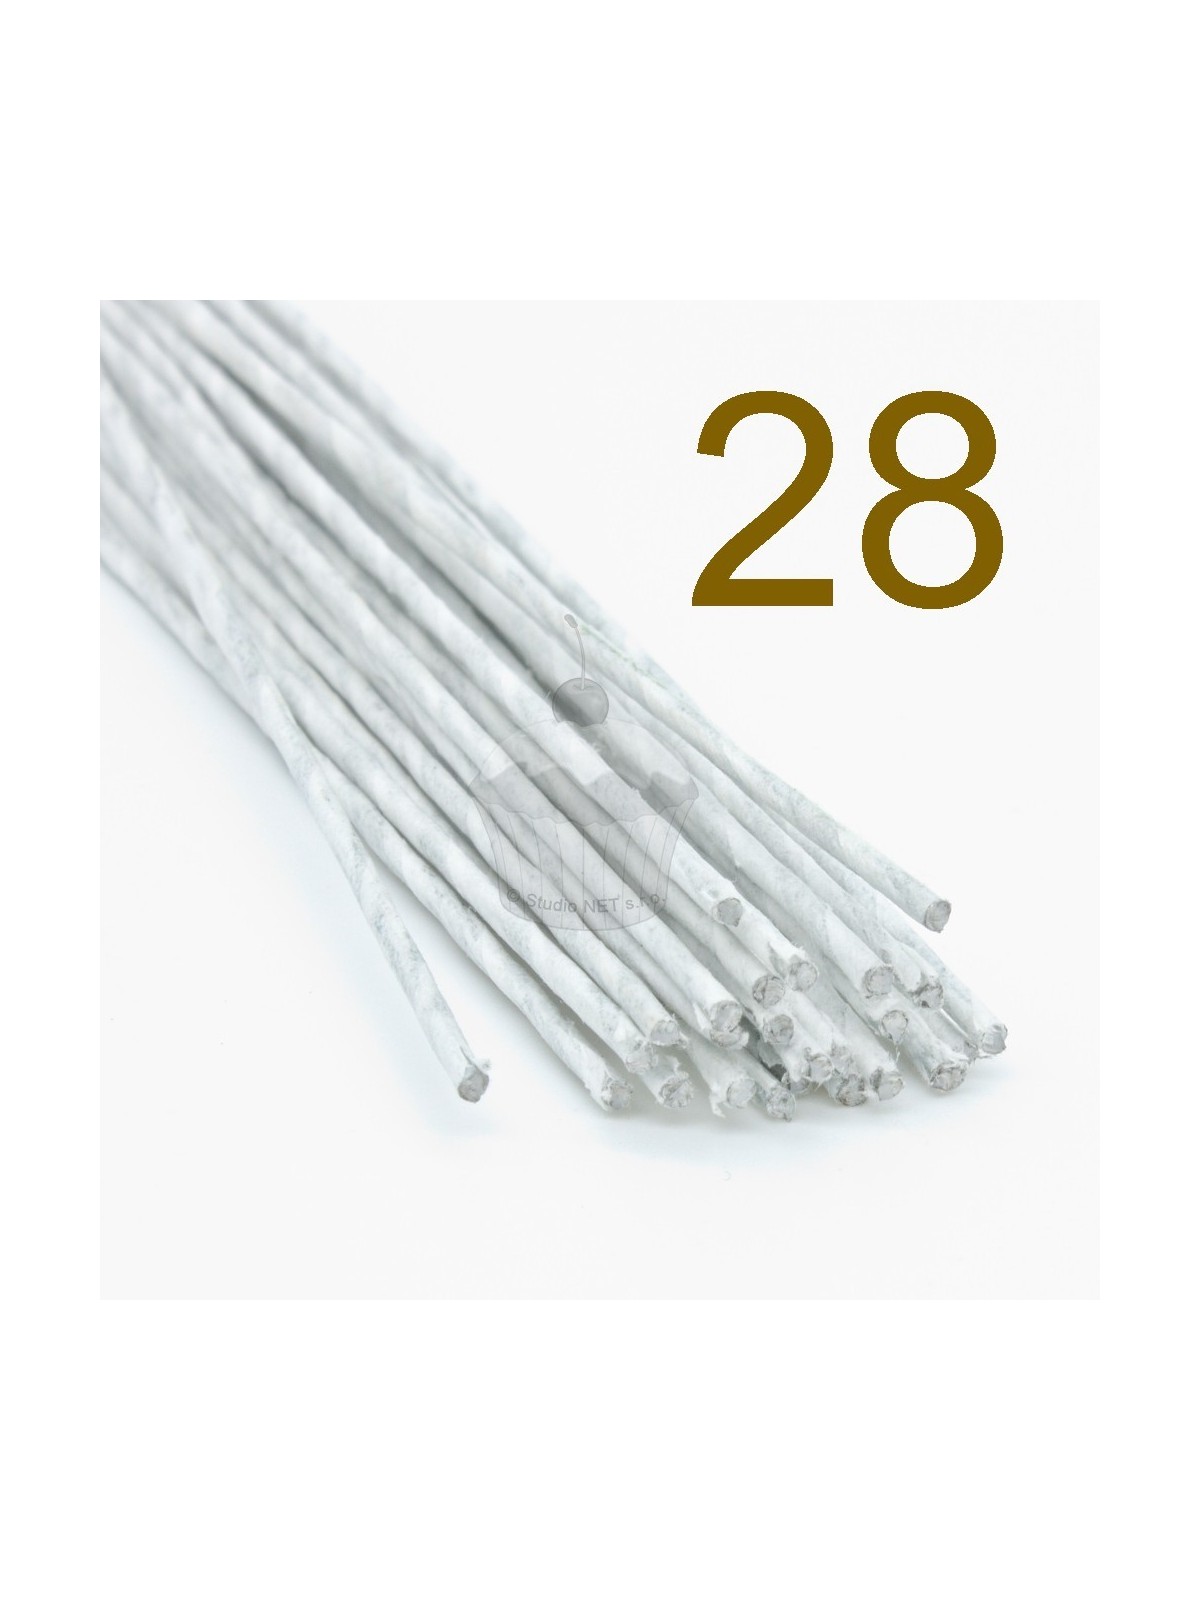 Caketools - 28  aranžovací drátky bílé - 50ks